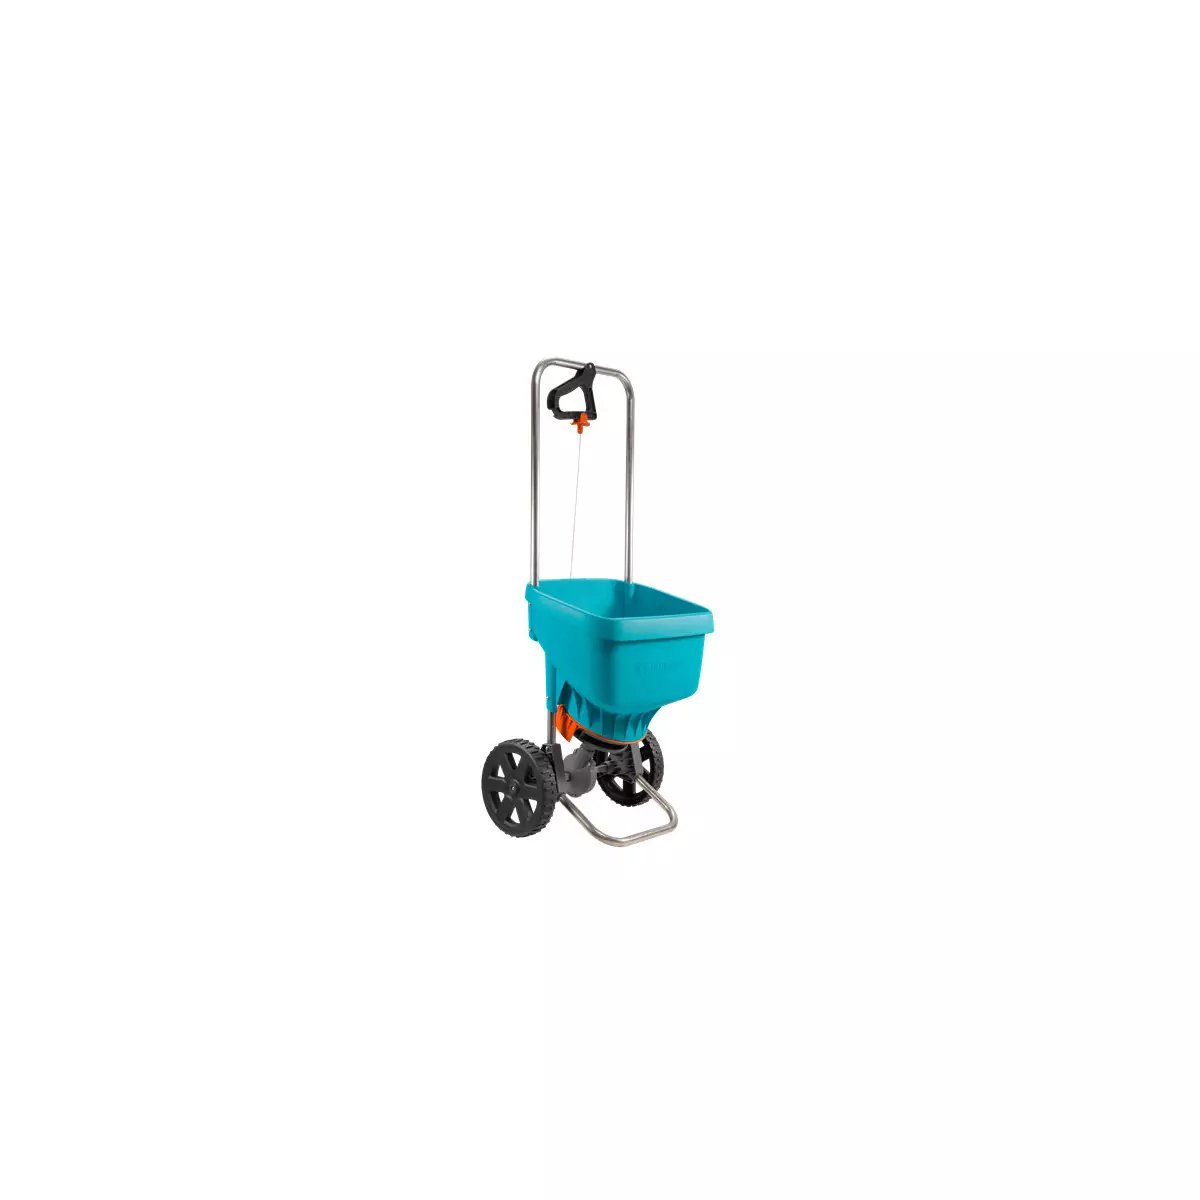 Spreader or fertilizer XL on all-terrain wheels